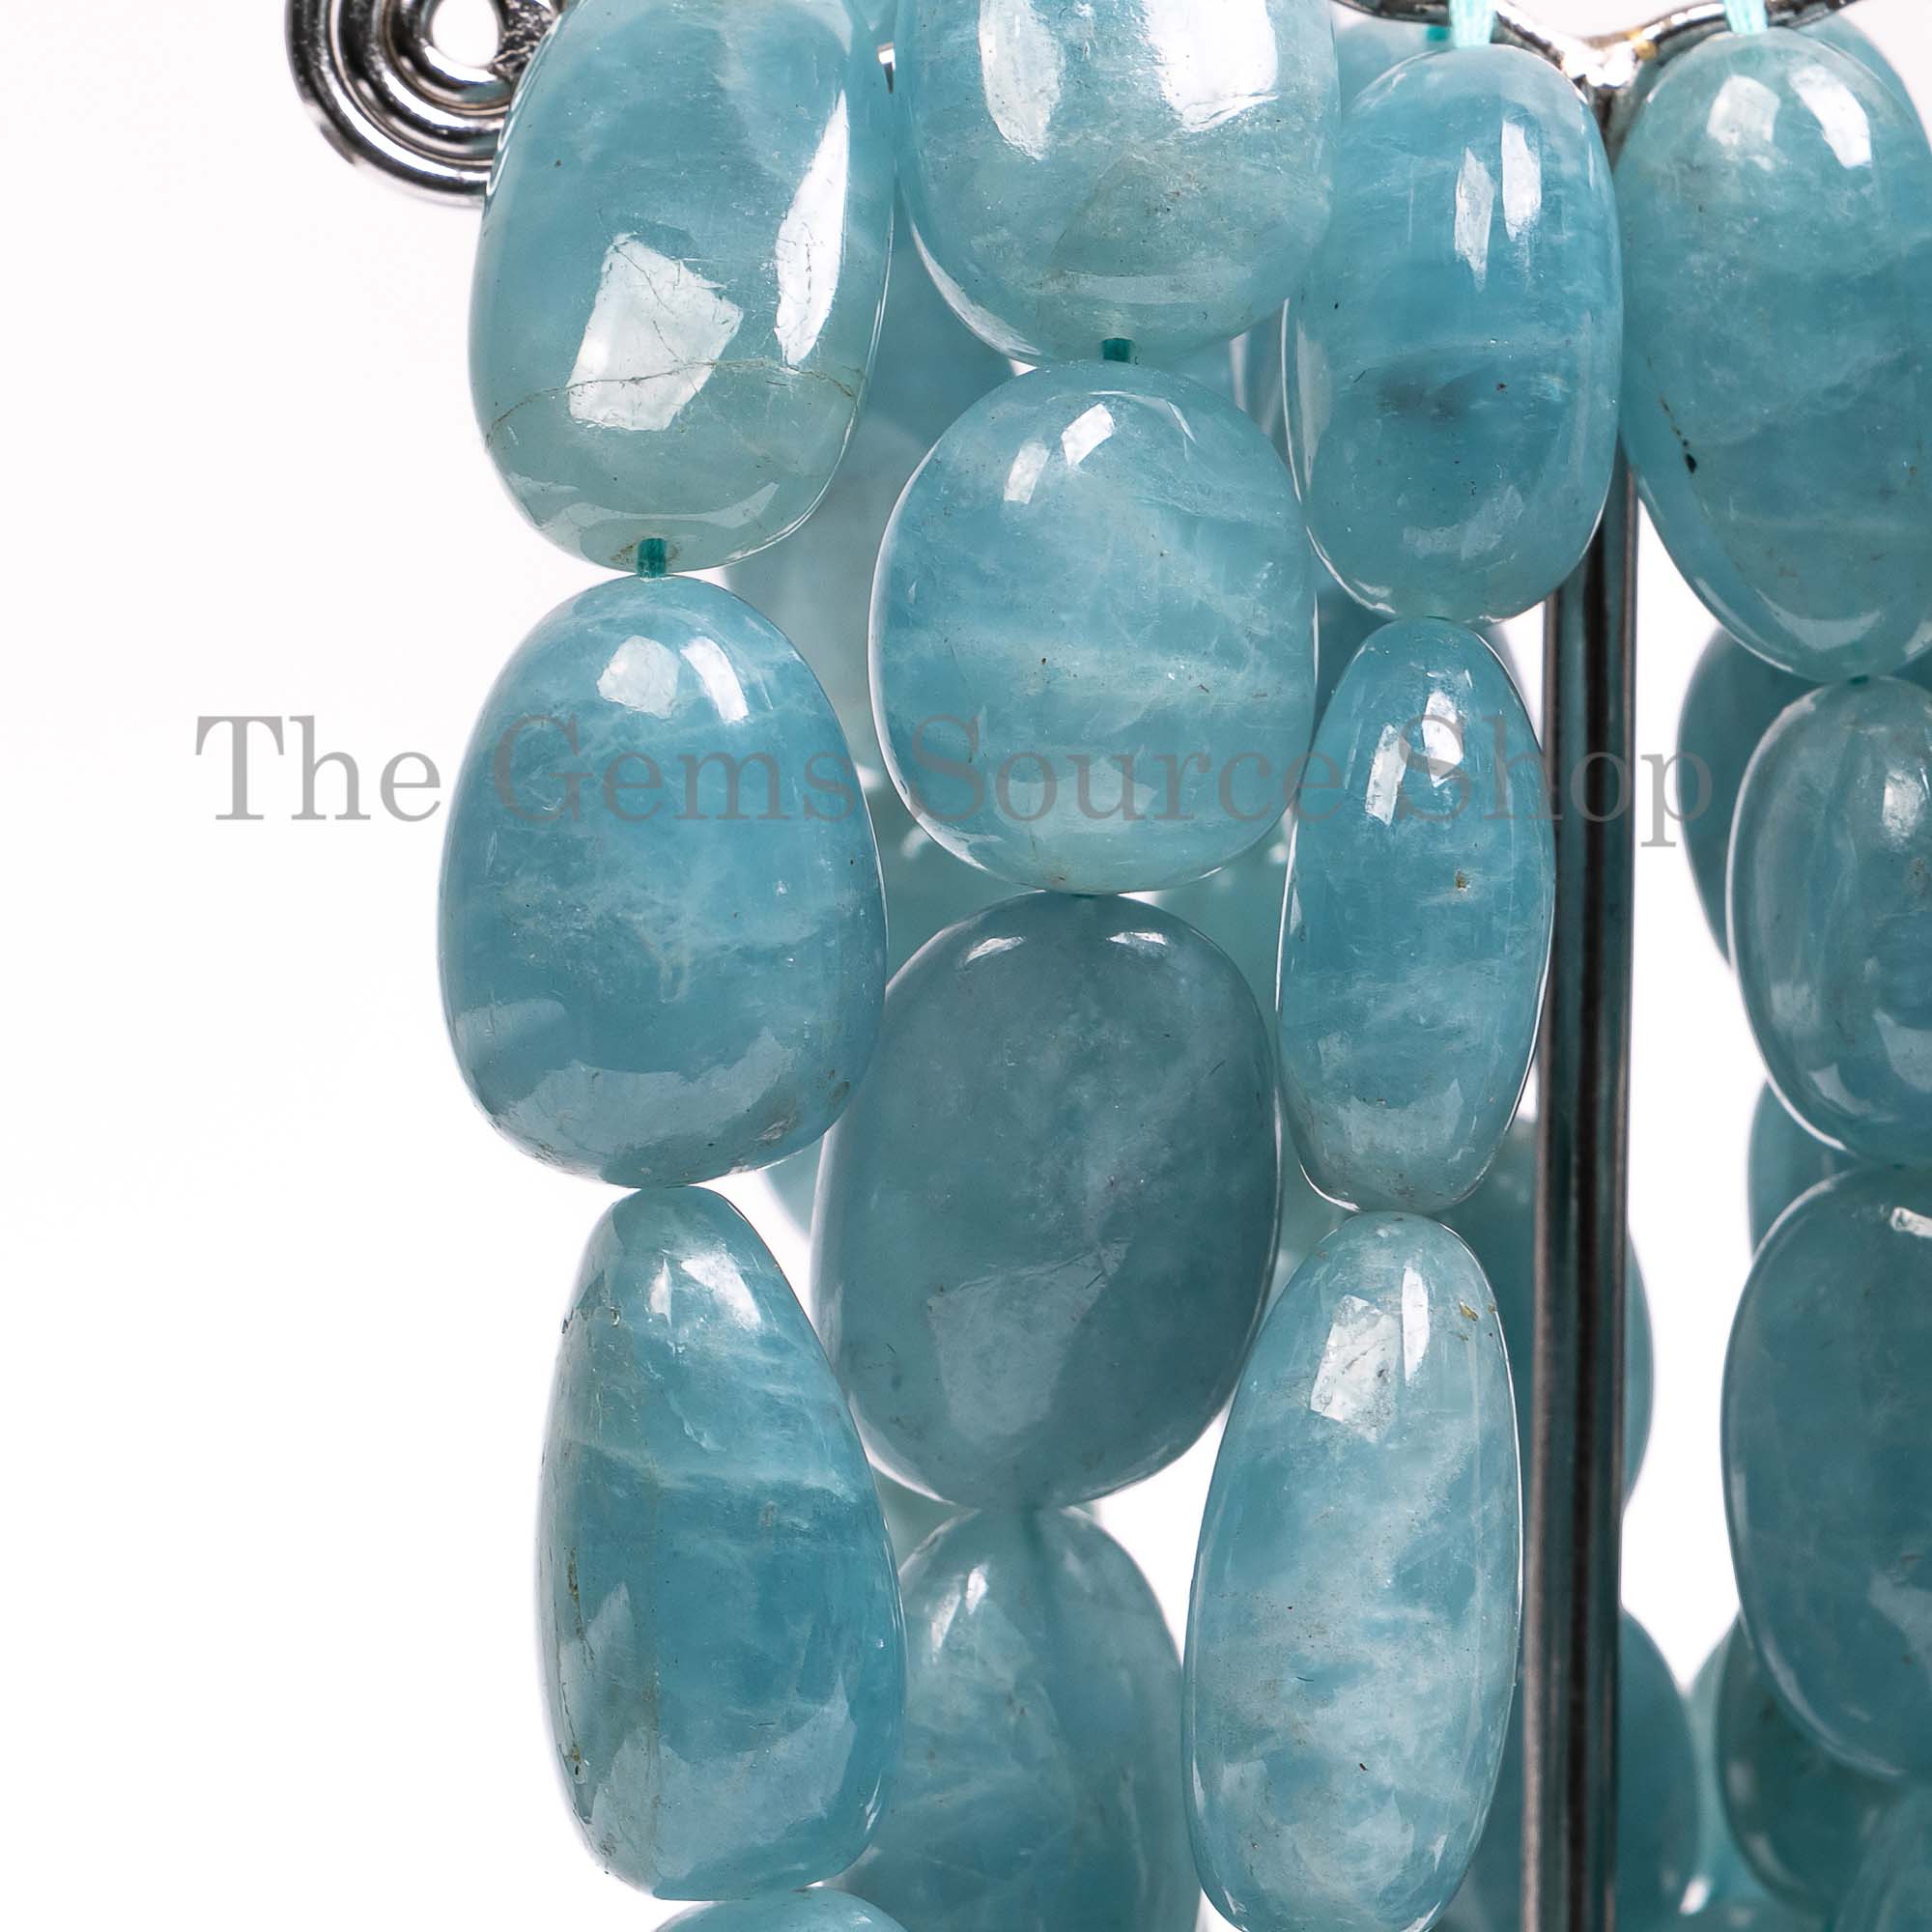 Aquamarine Beads, Aquamarine Nugget Shape Beads, Aquamarine Smooth Beads, Aquamarine Gemstone Beads